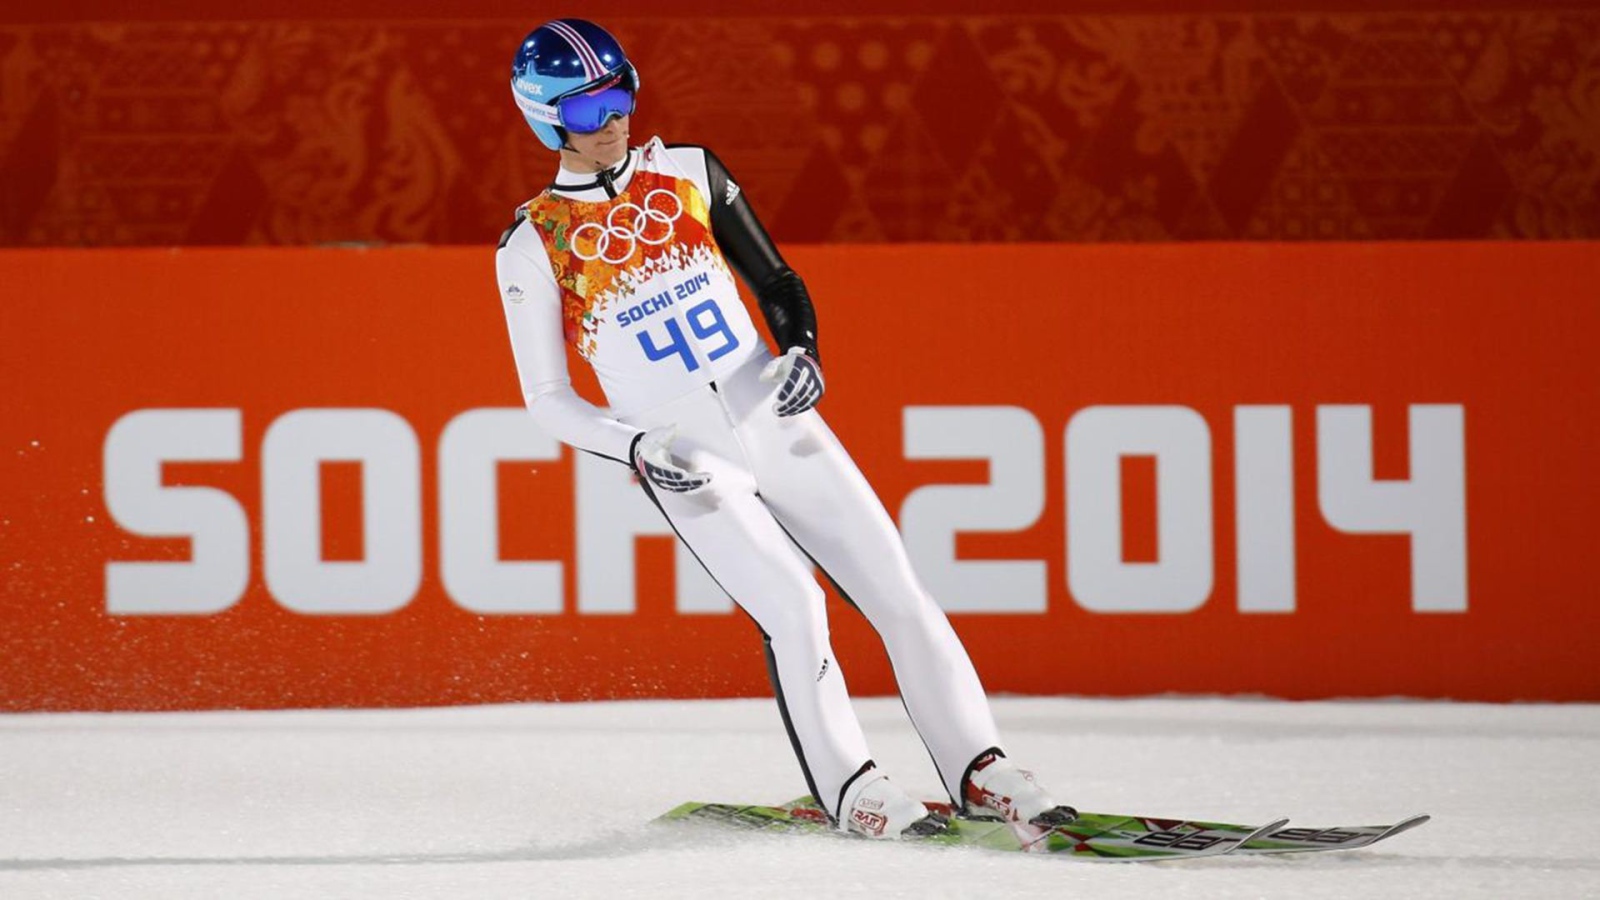 Обладатель серебряной и бронзовой медали в дисциплине прыжки на лыжах с трамплина Петер Превц на олимпиаде из Словении